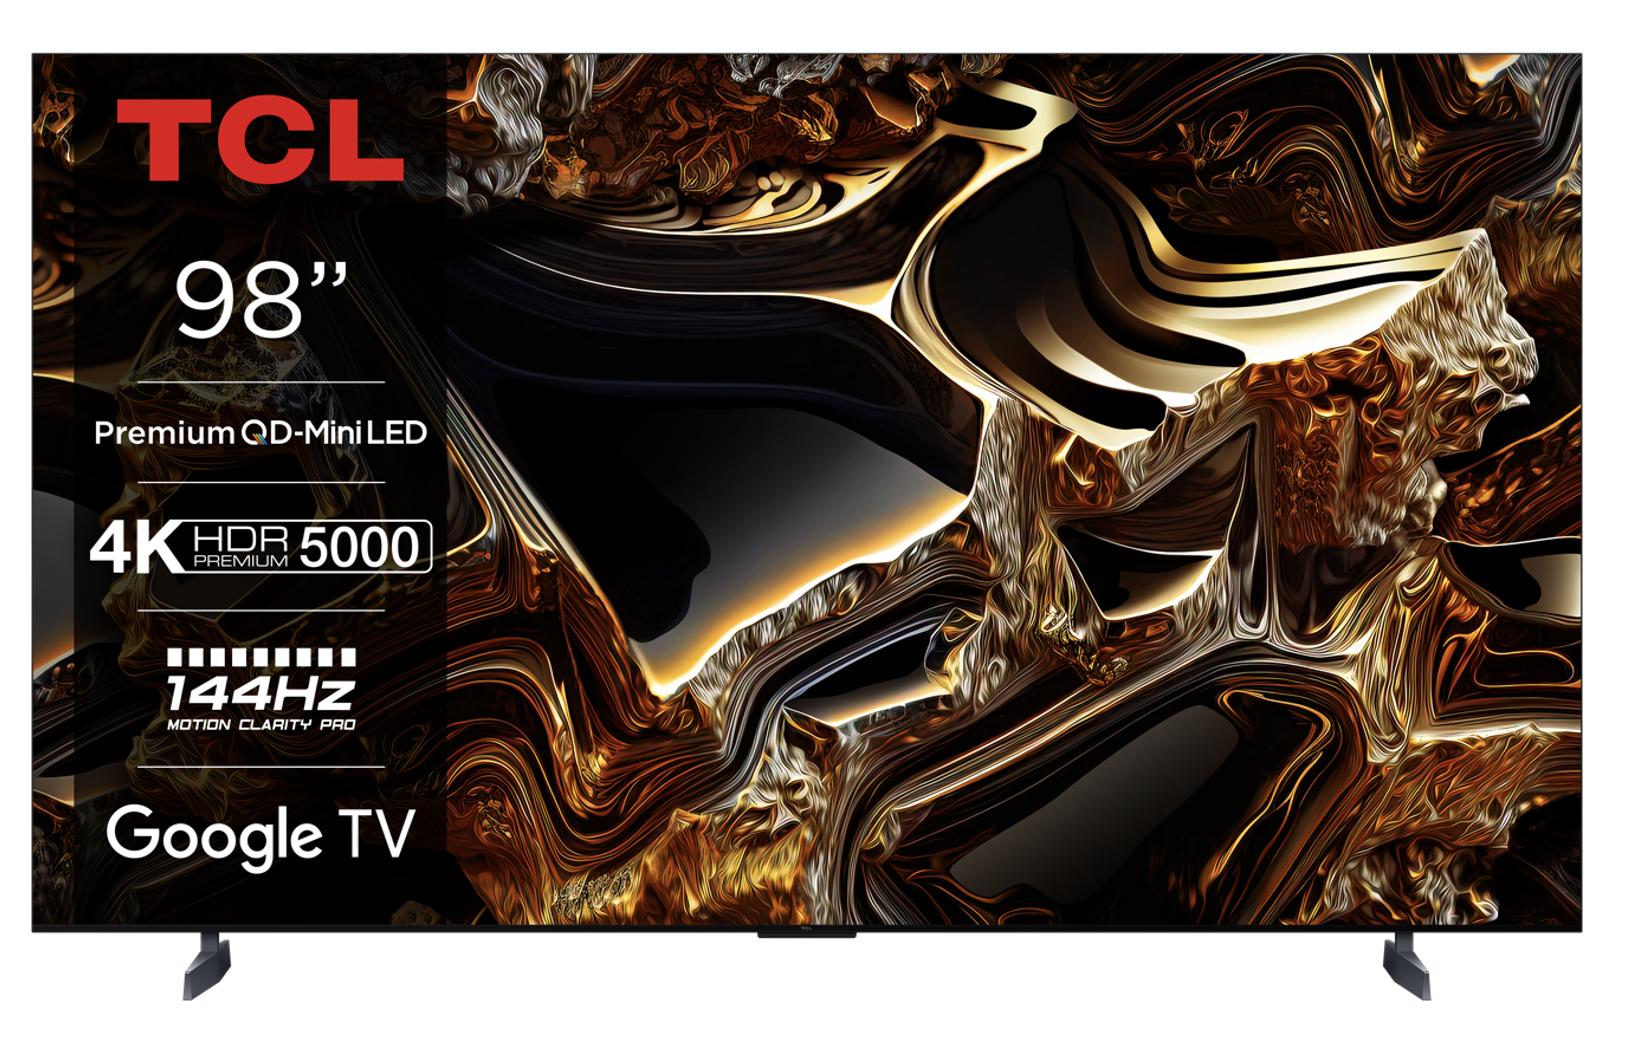 TCL prezentuje najnowszą linię dużych telewizorów LED Premium QD-Mini oraz inteligentnych urządzeń domowych